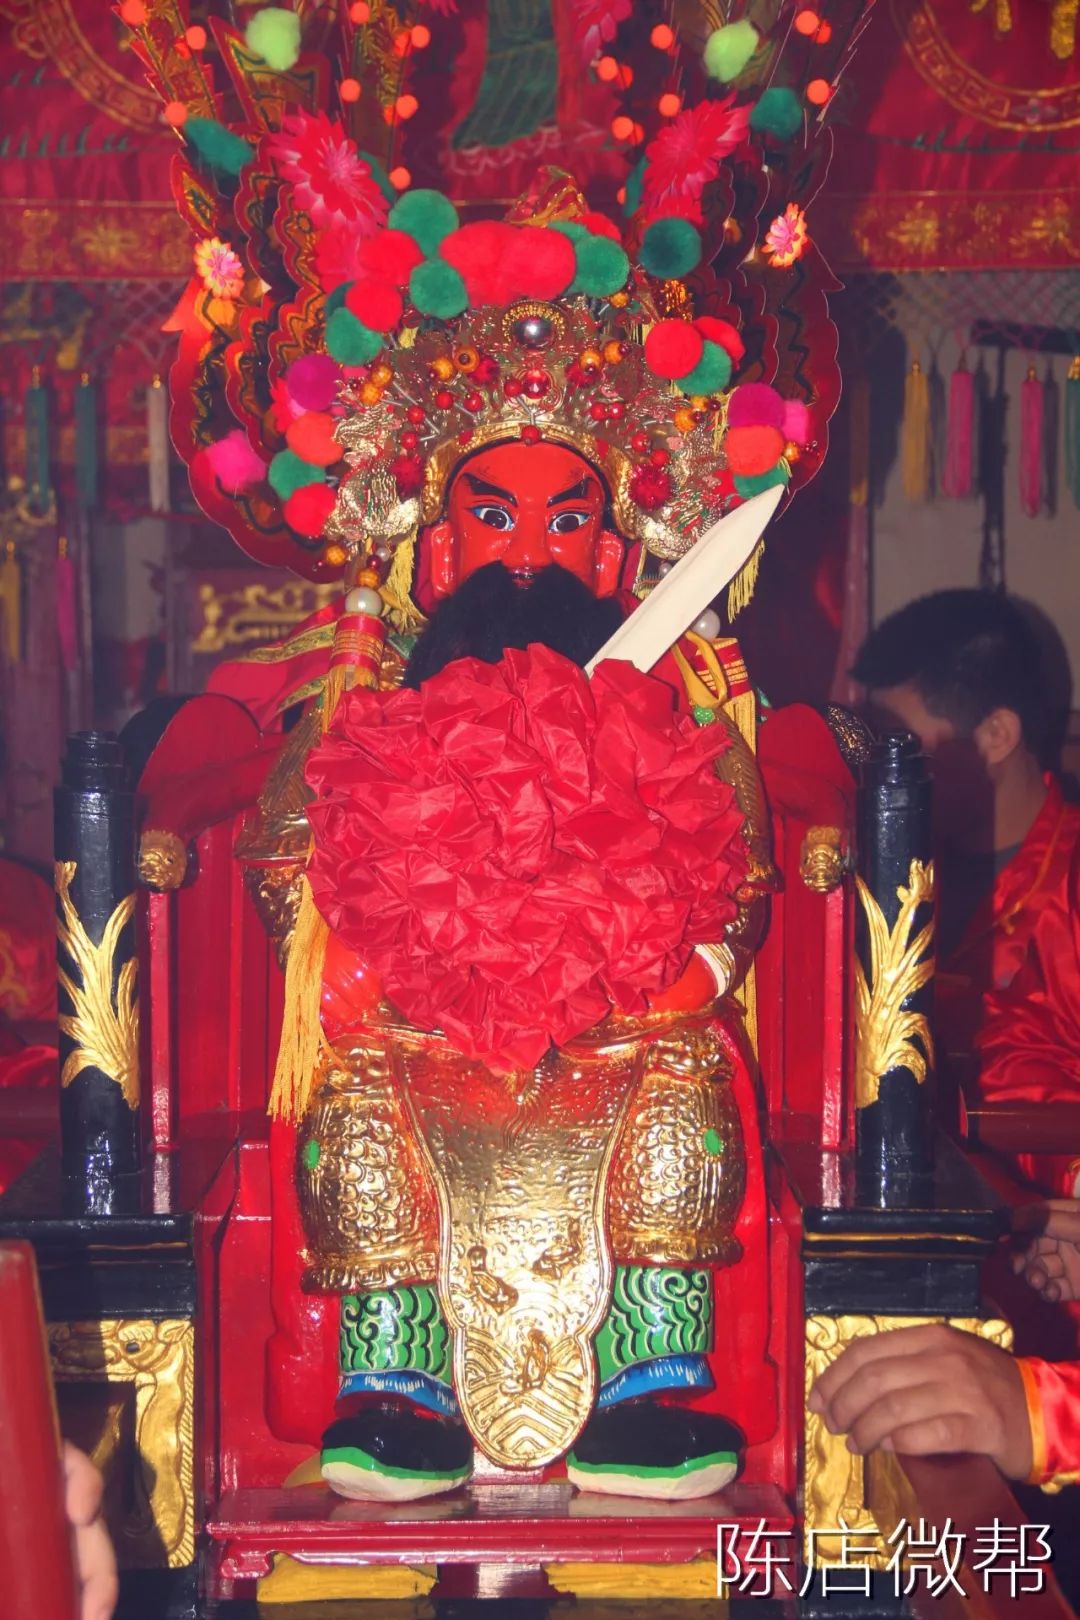 每年年初,潮汕地区都有迎老爷的风俗